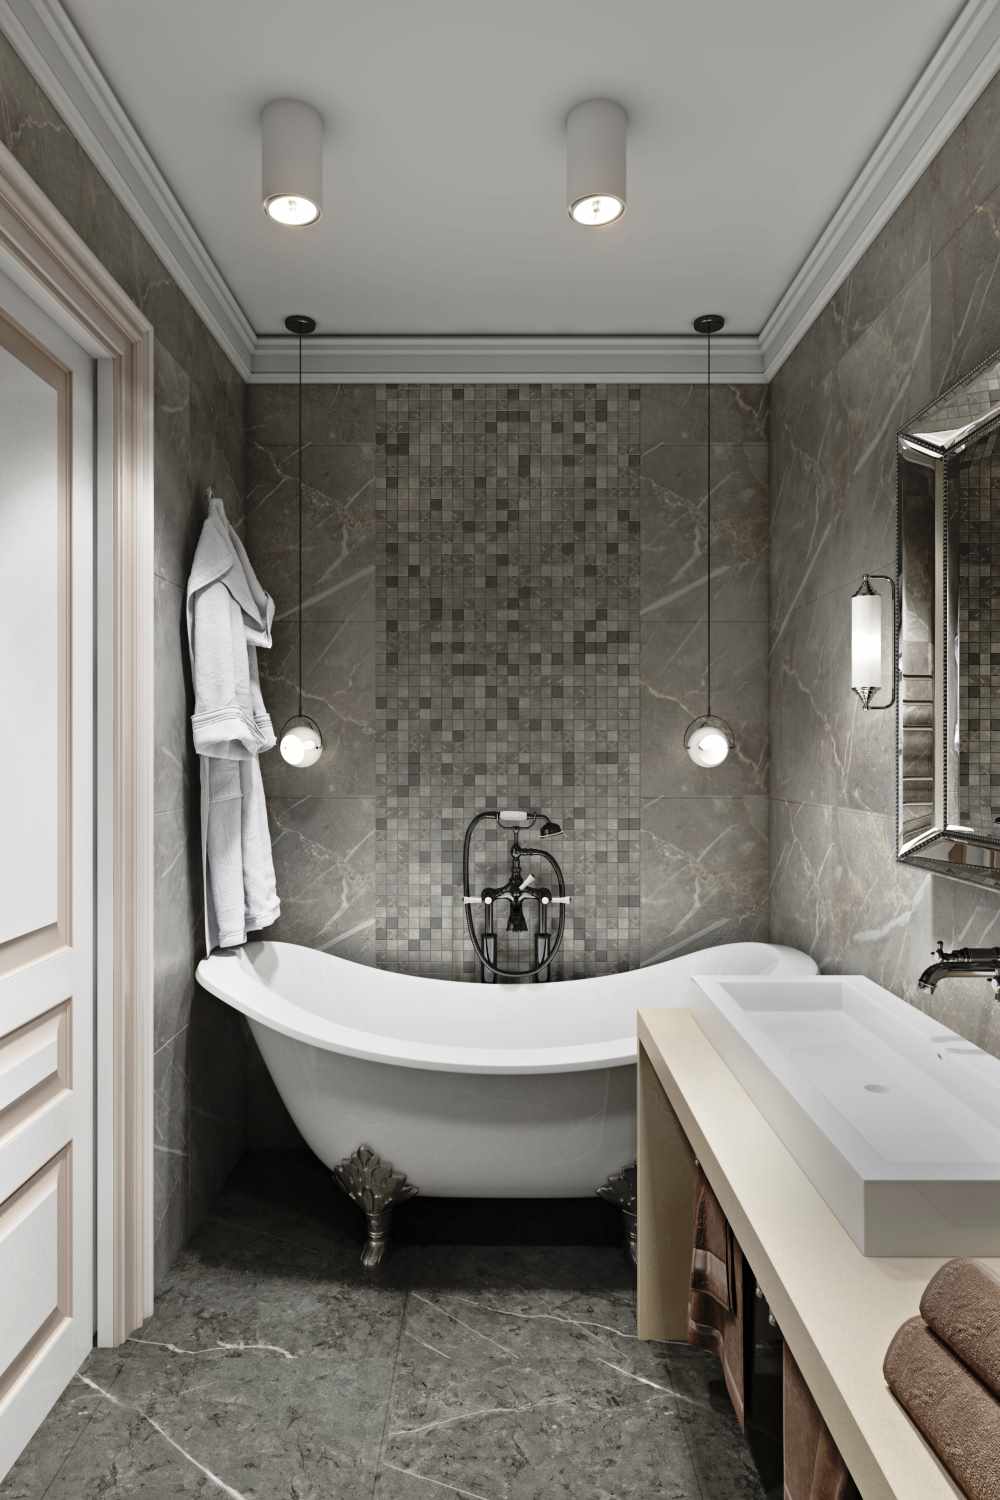 variant van het ongewone ontwerp van de badkamer